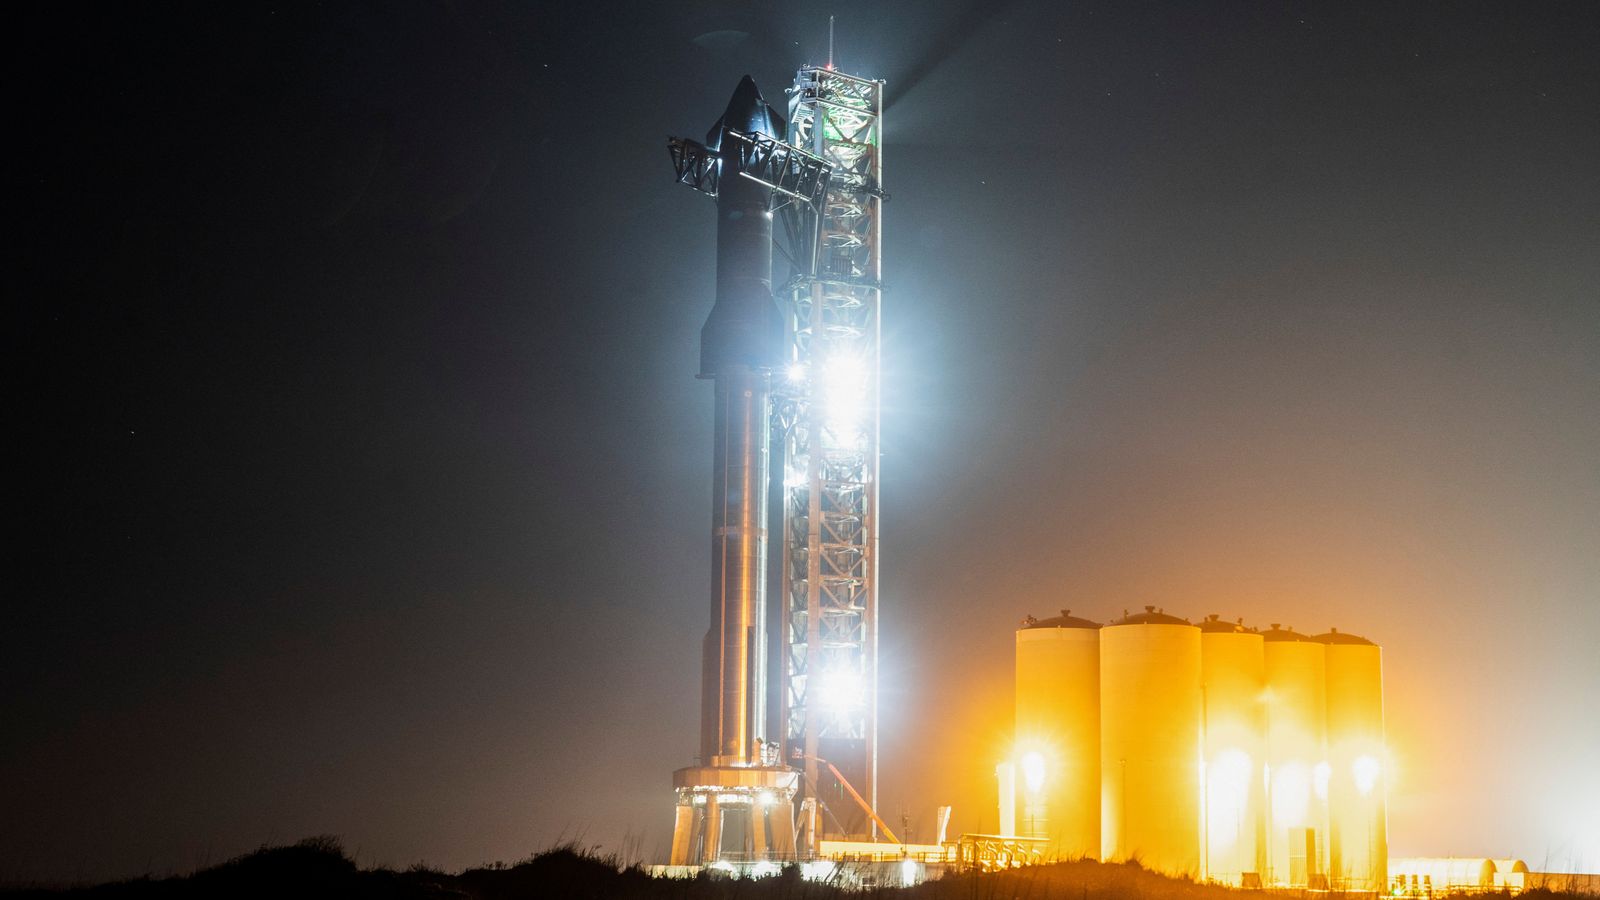 El lanzamiento de Starship de SpaceX se reprogramó para el jueves después de un primer intento fallido |  Noticias científicas y técnicas.